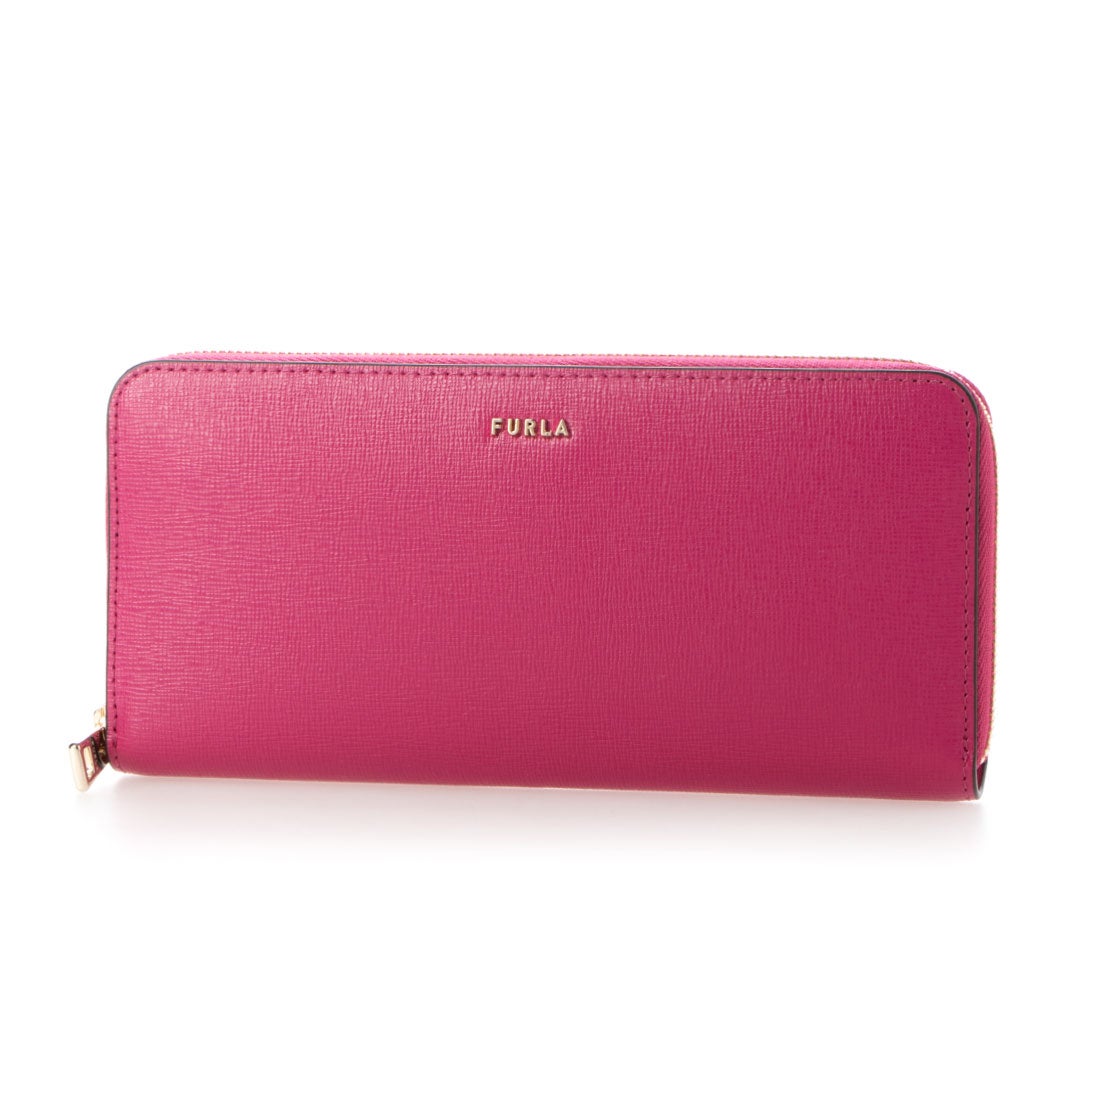 ピンクの長財布。